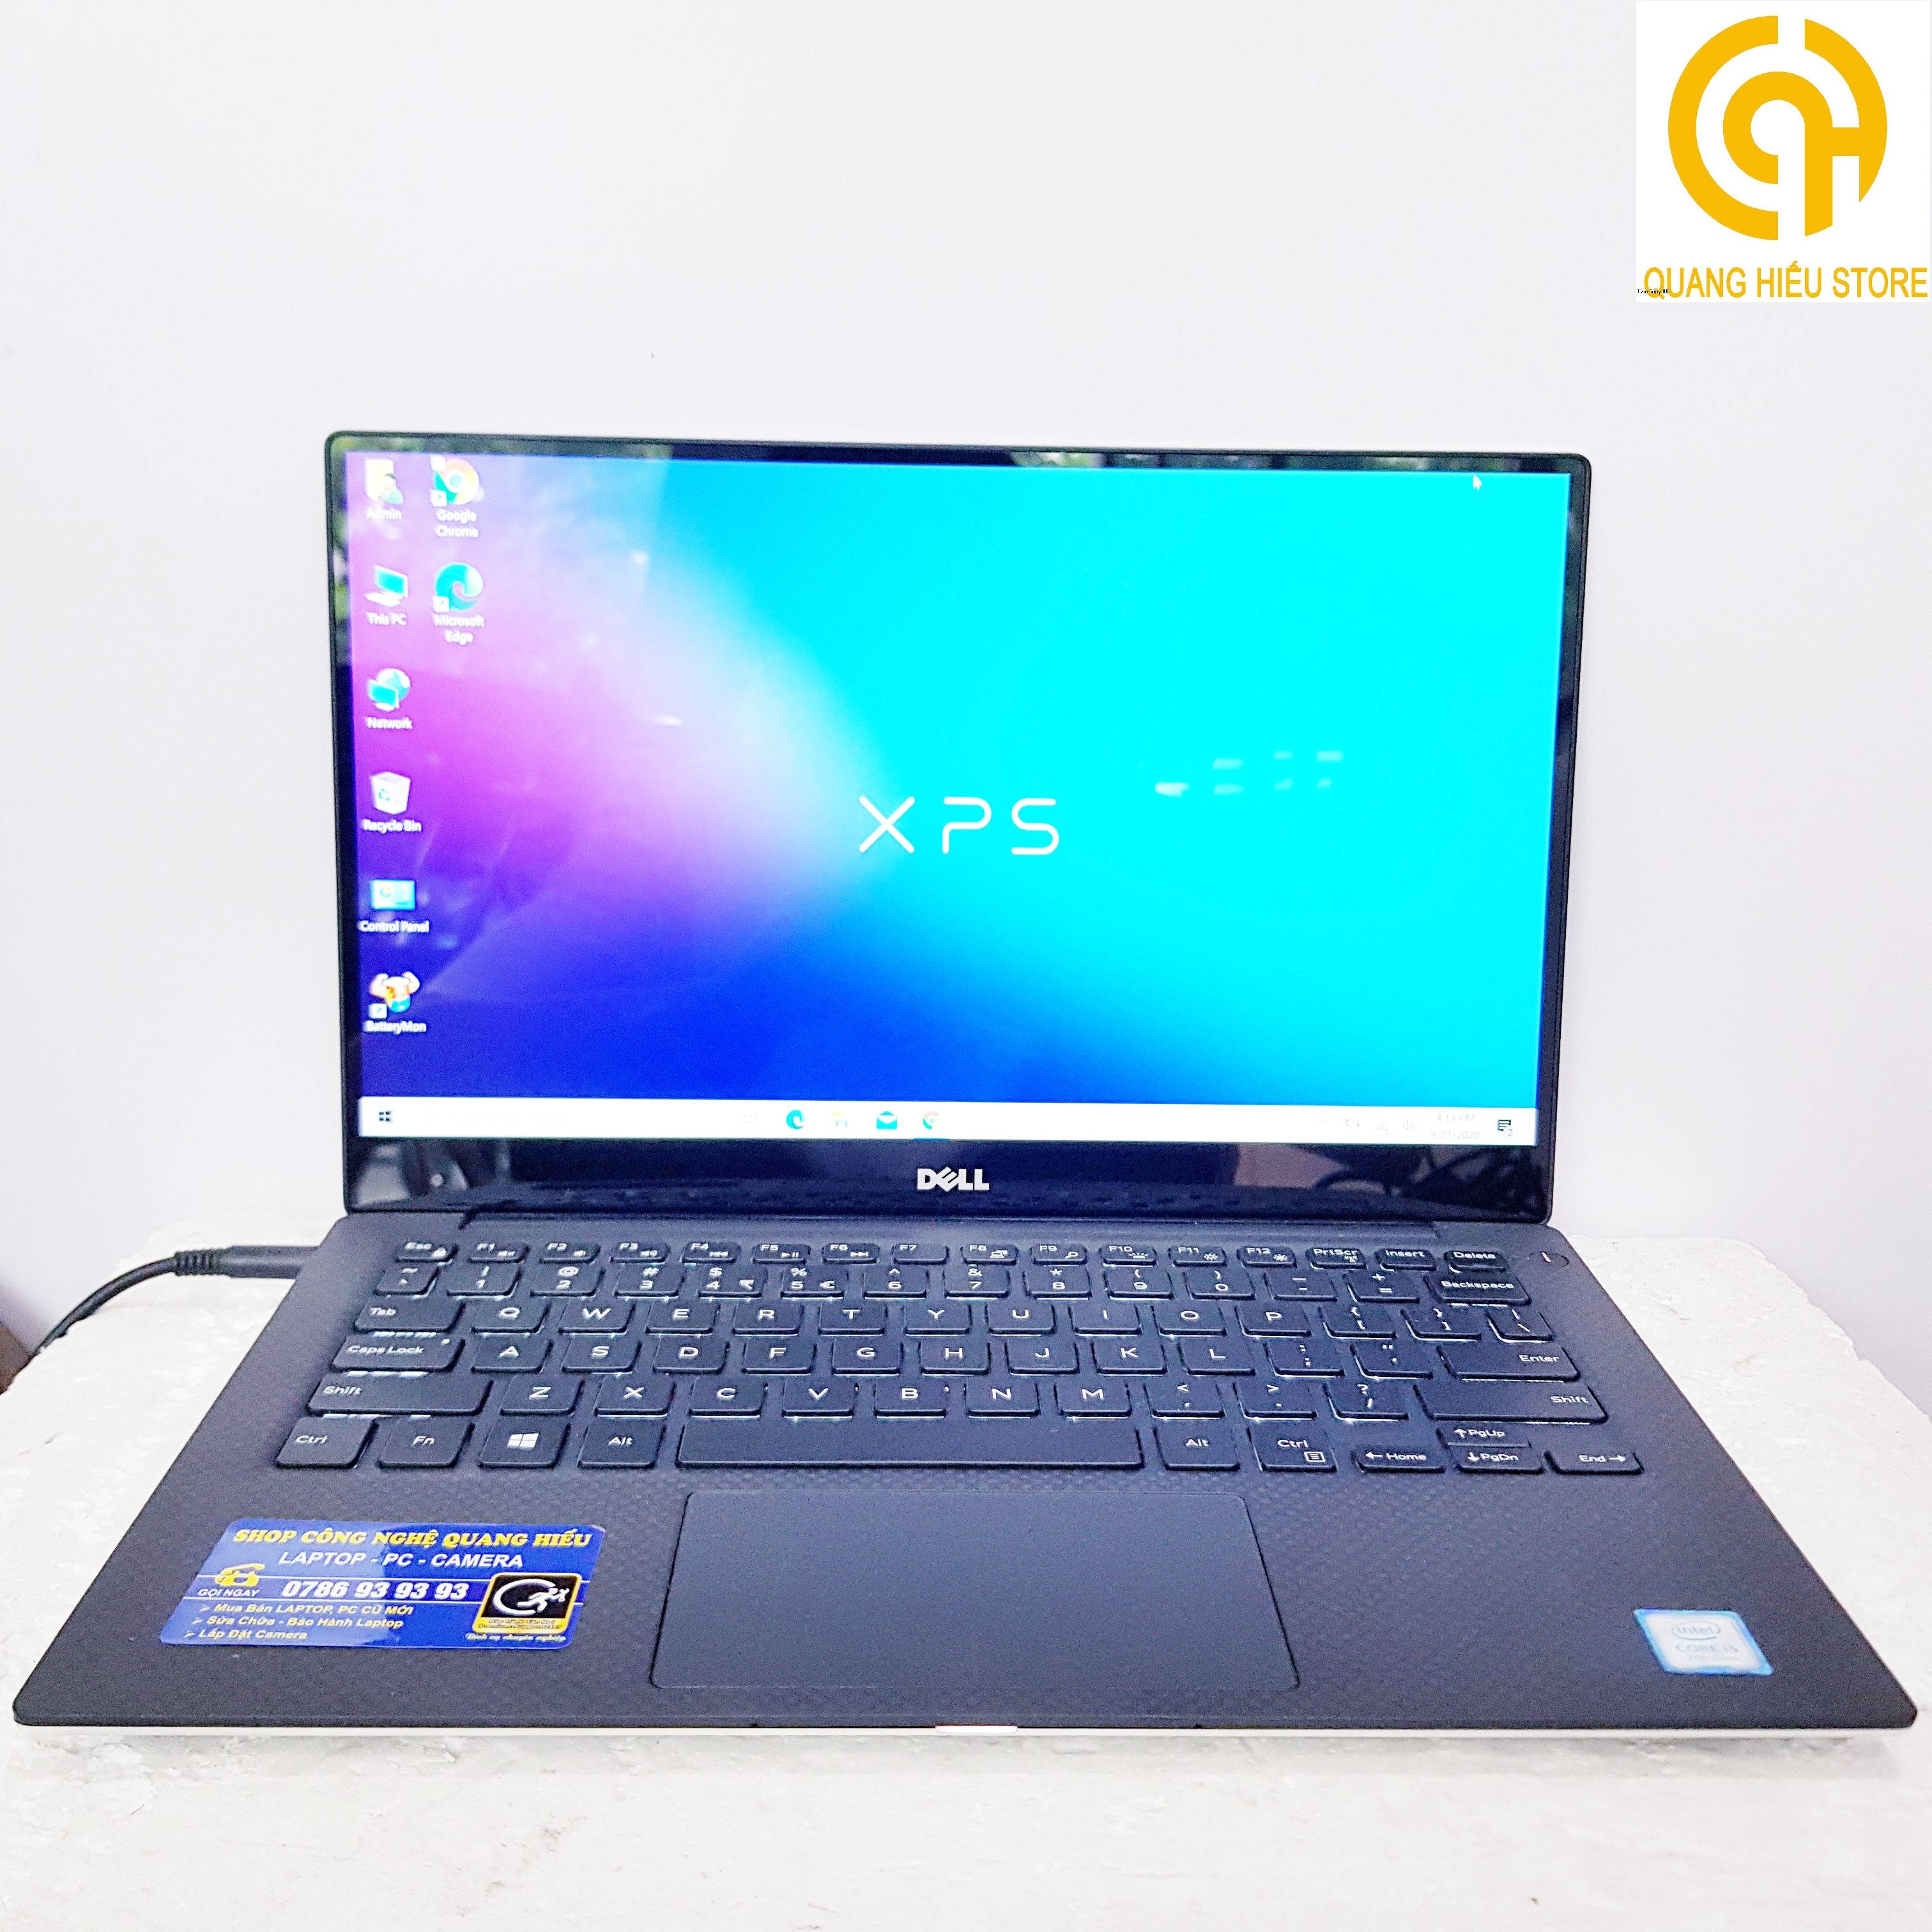 Laptop Dell XPS 13 9360 ( I5 7200U / RAM 8GB / SSD 256GB / VGA : Intel